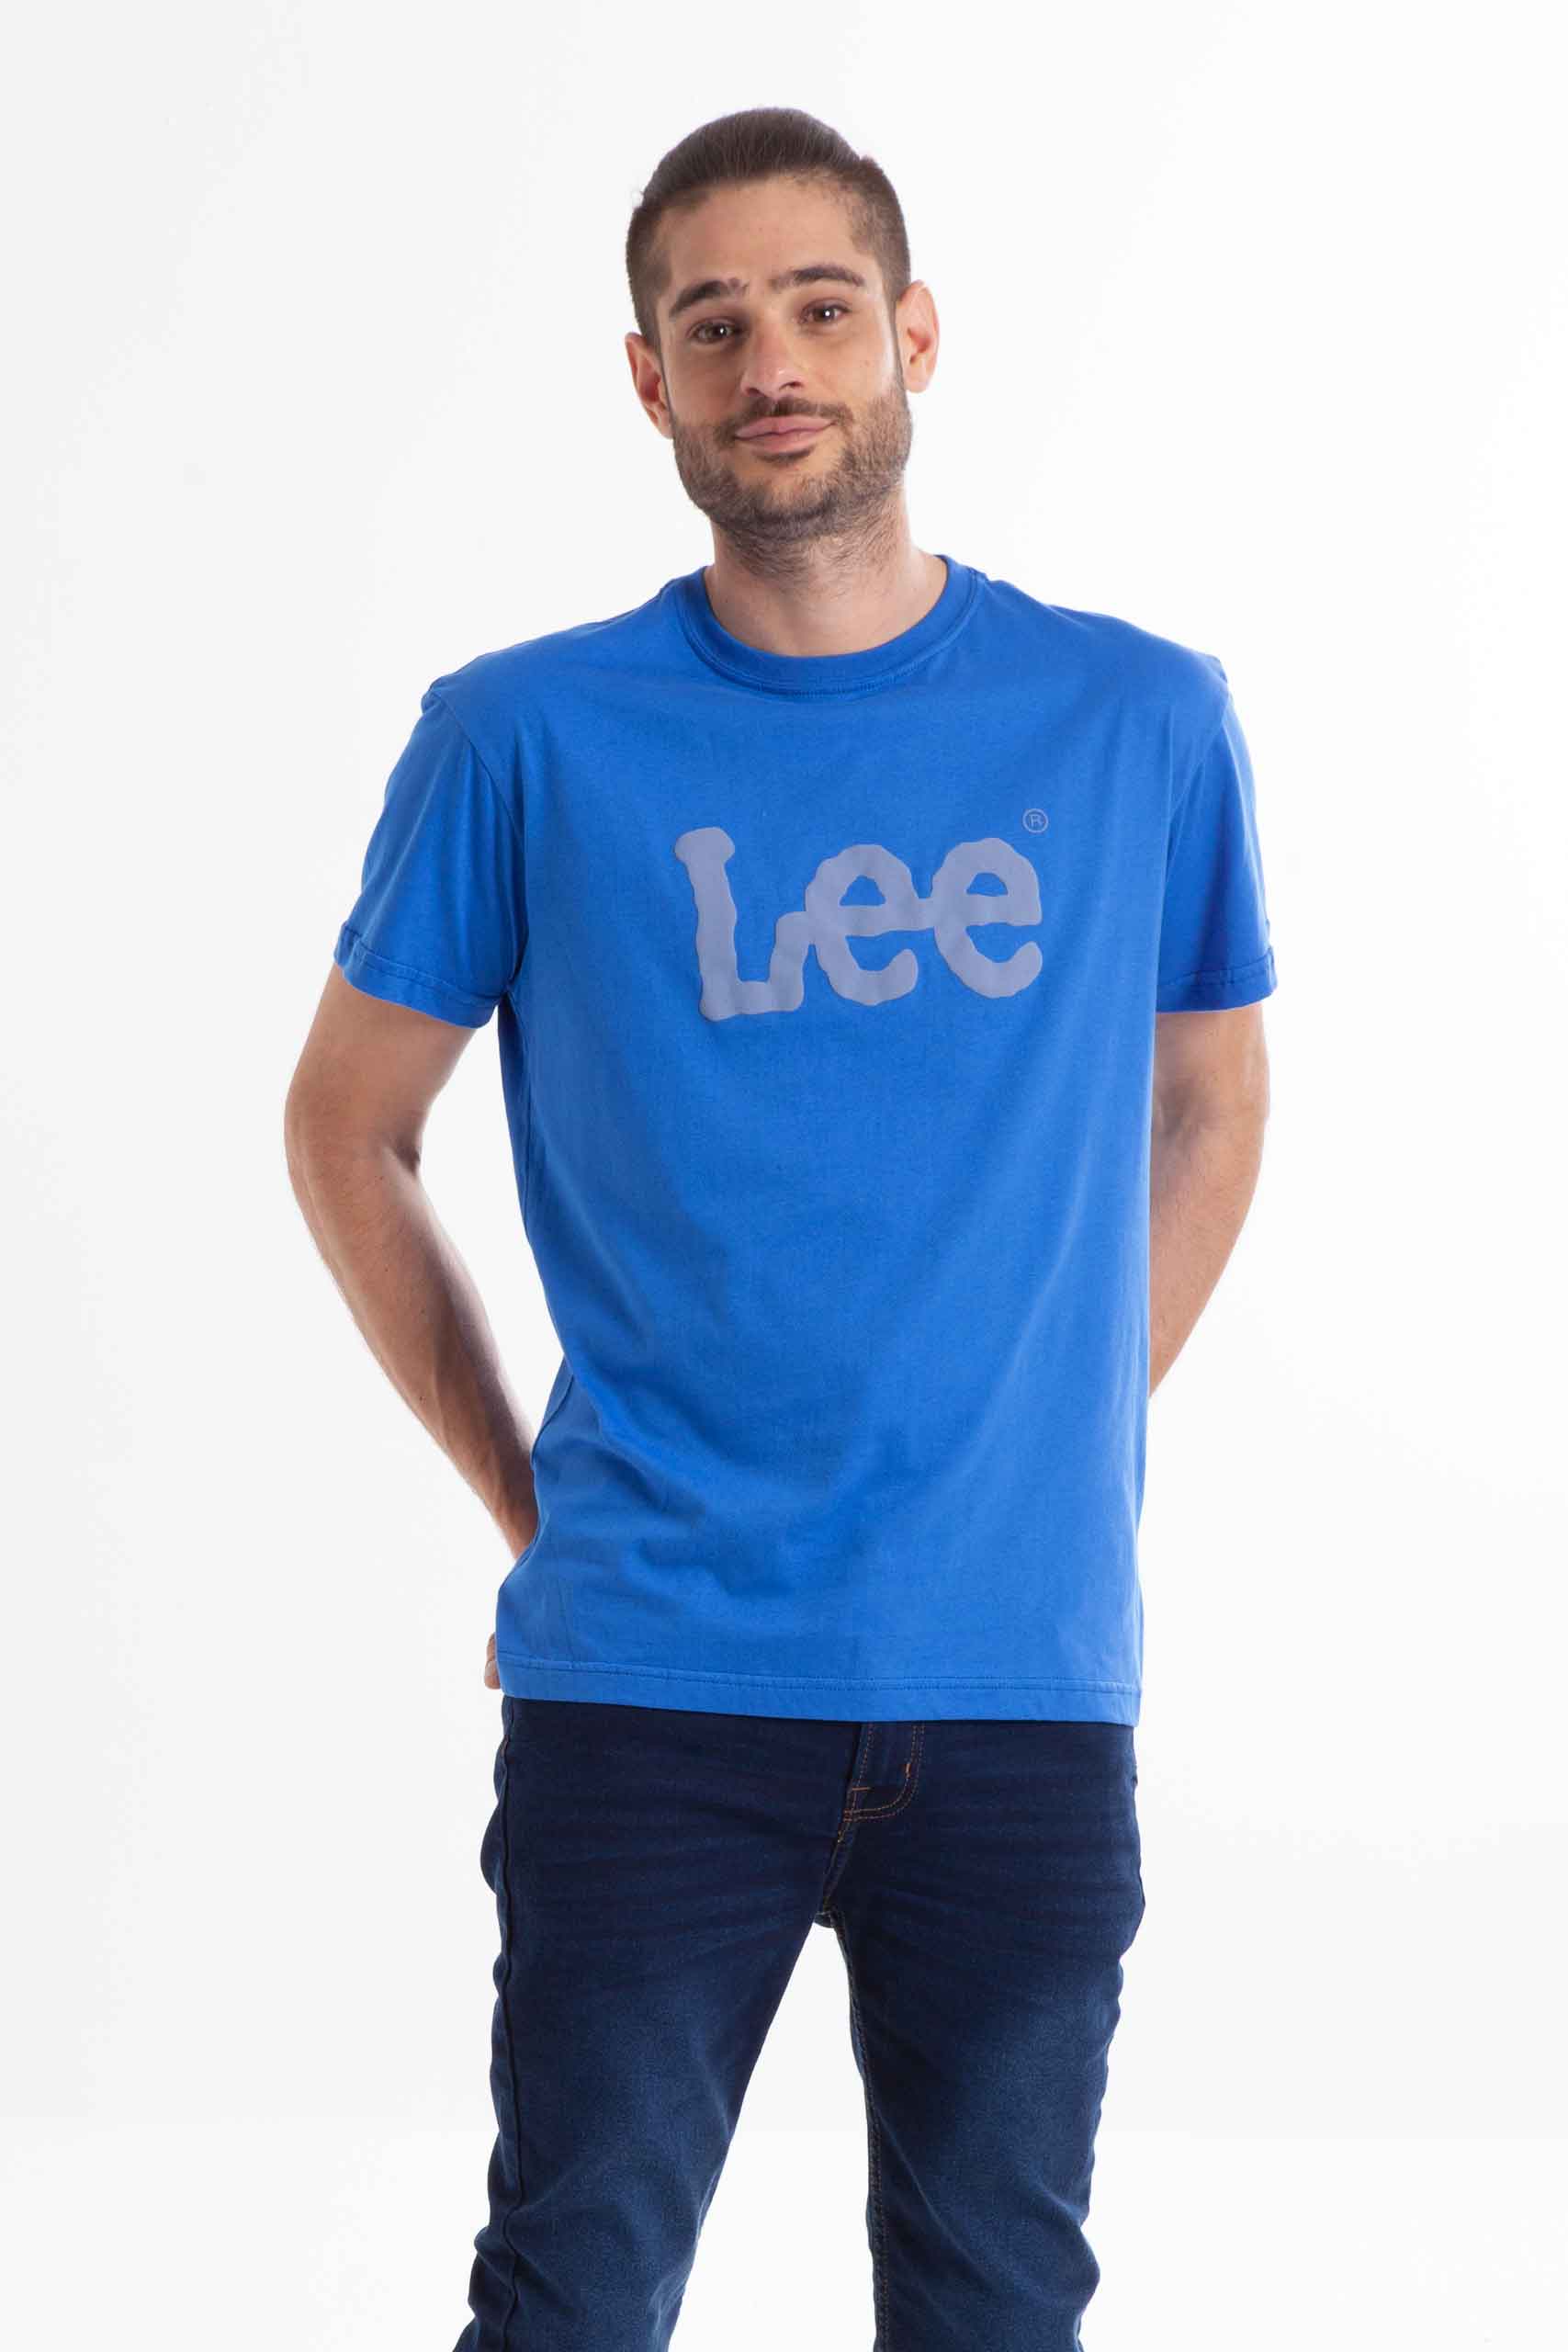 Vista frontal de camiseta de color azul eléctrico con logo de la marca lee